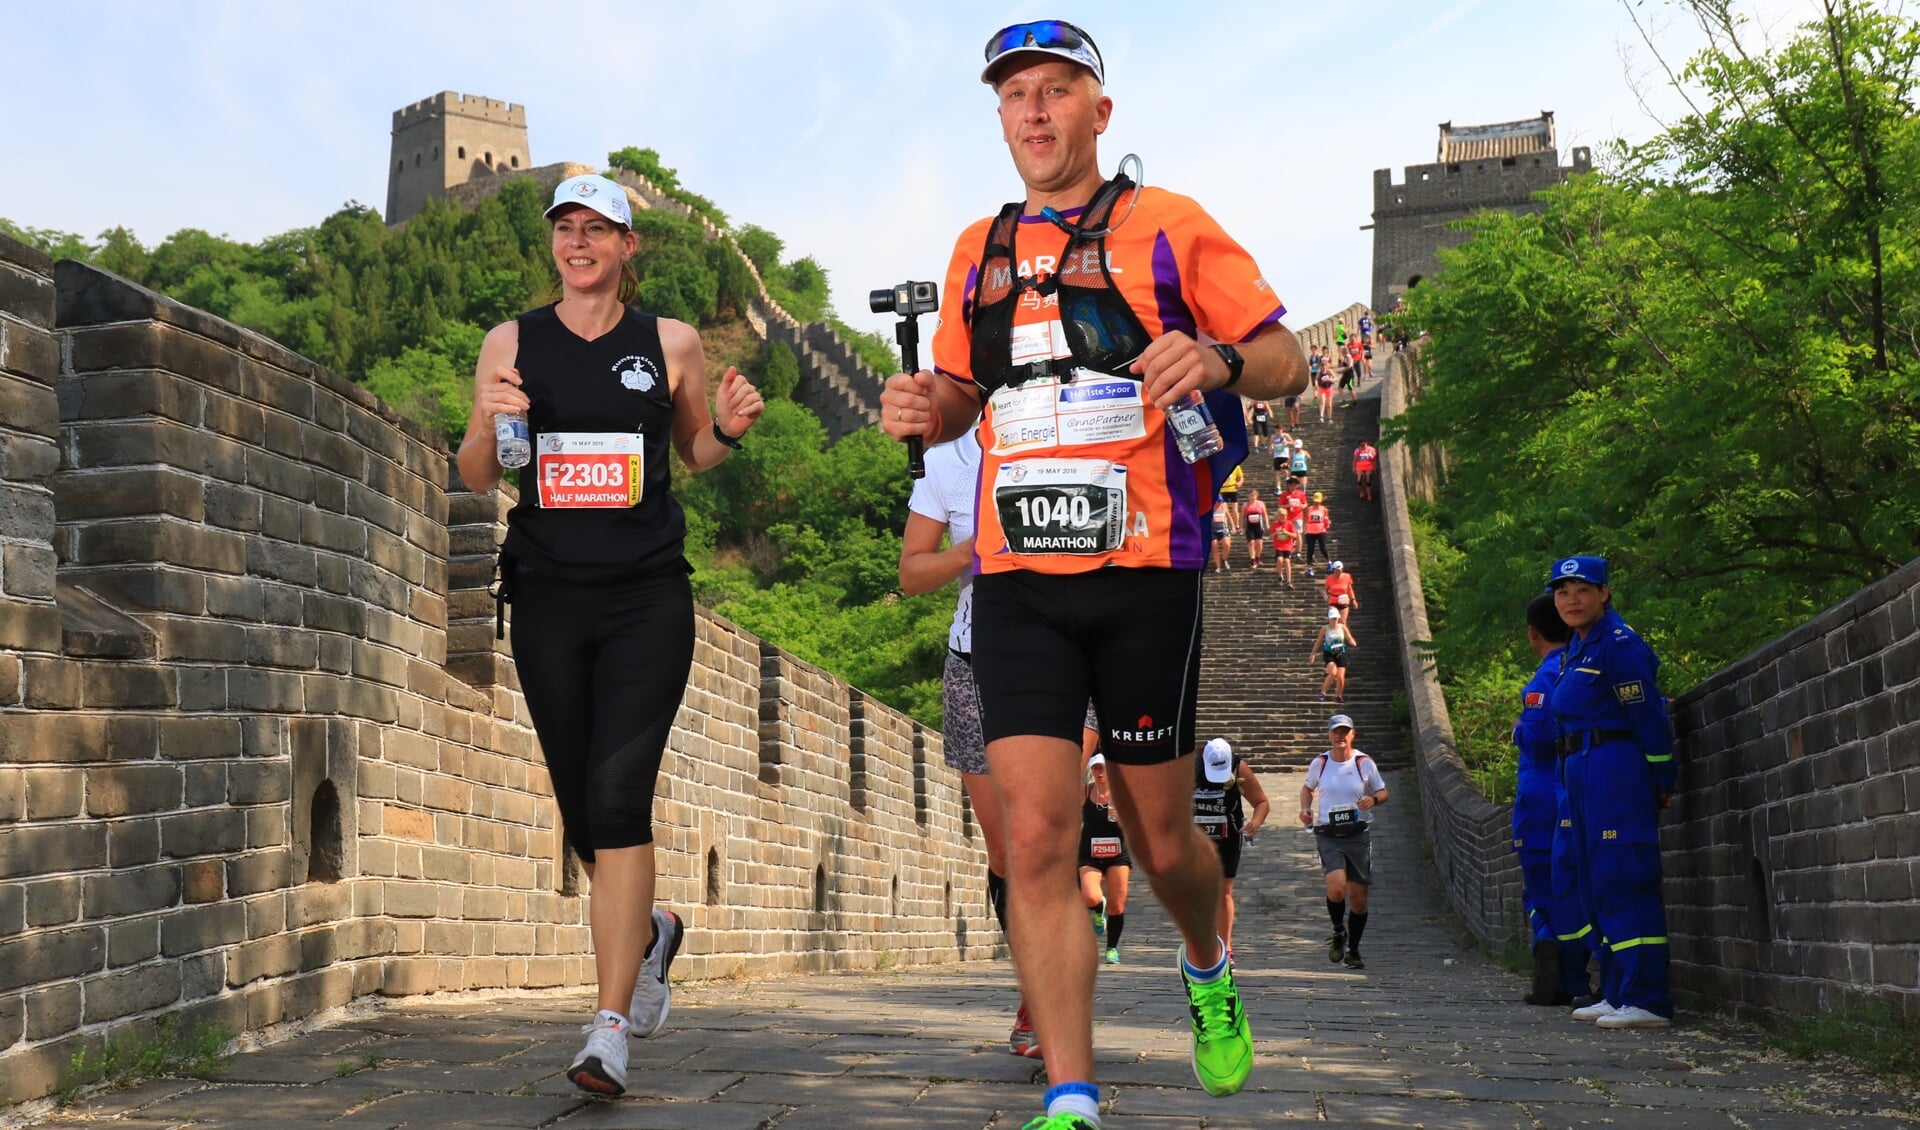 De Great Wall marathon, één van de zwaarste marathons van de wereld.